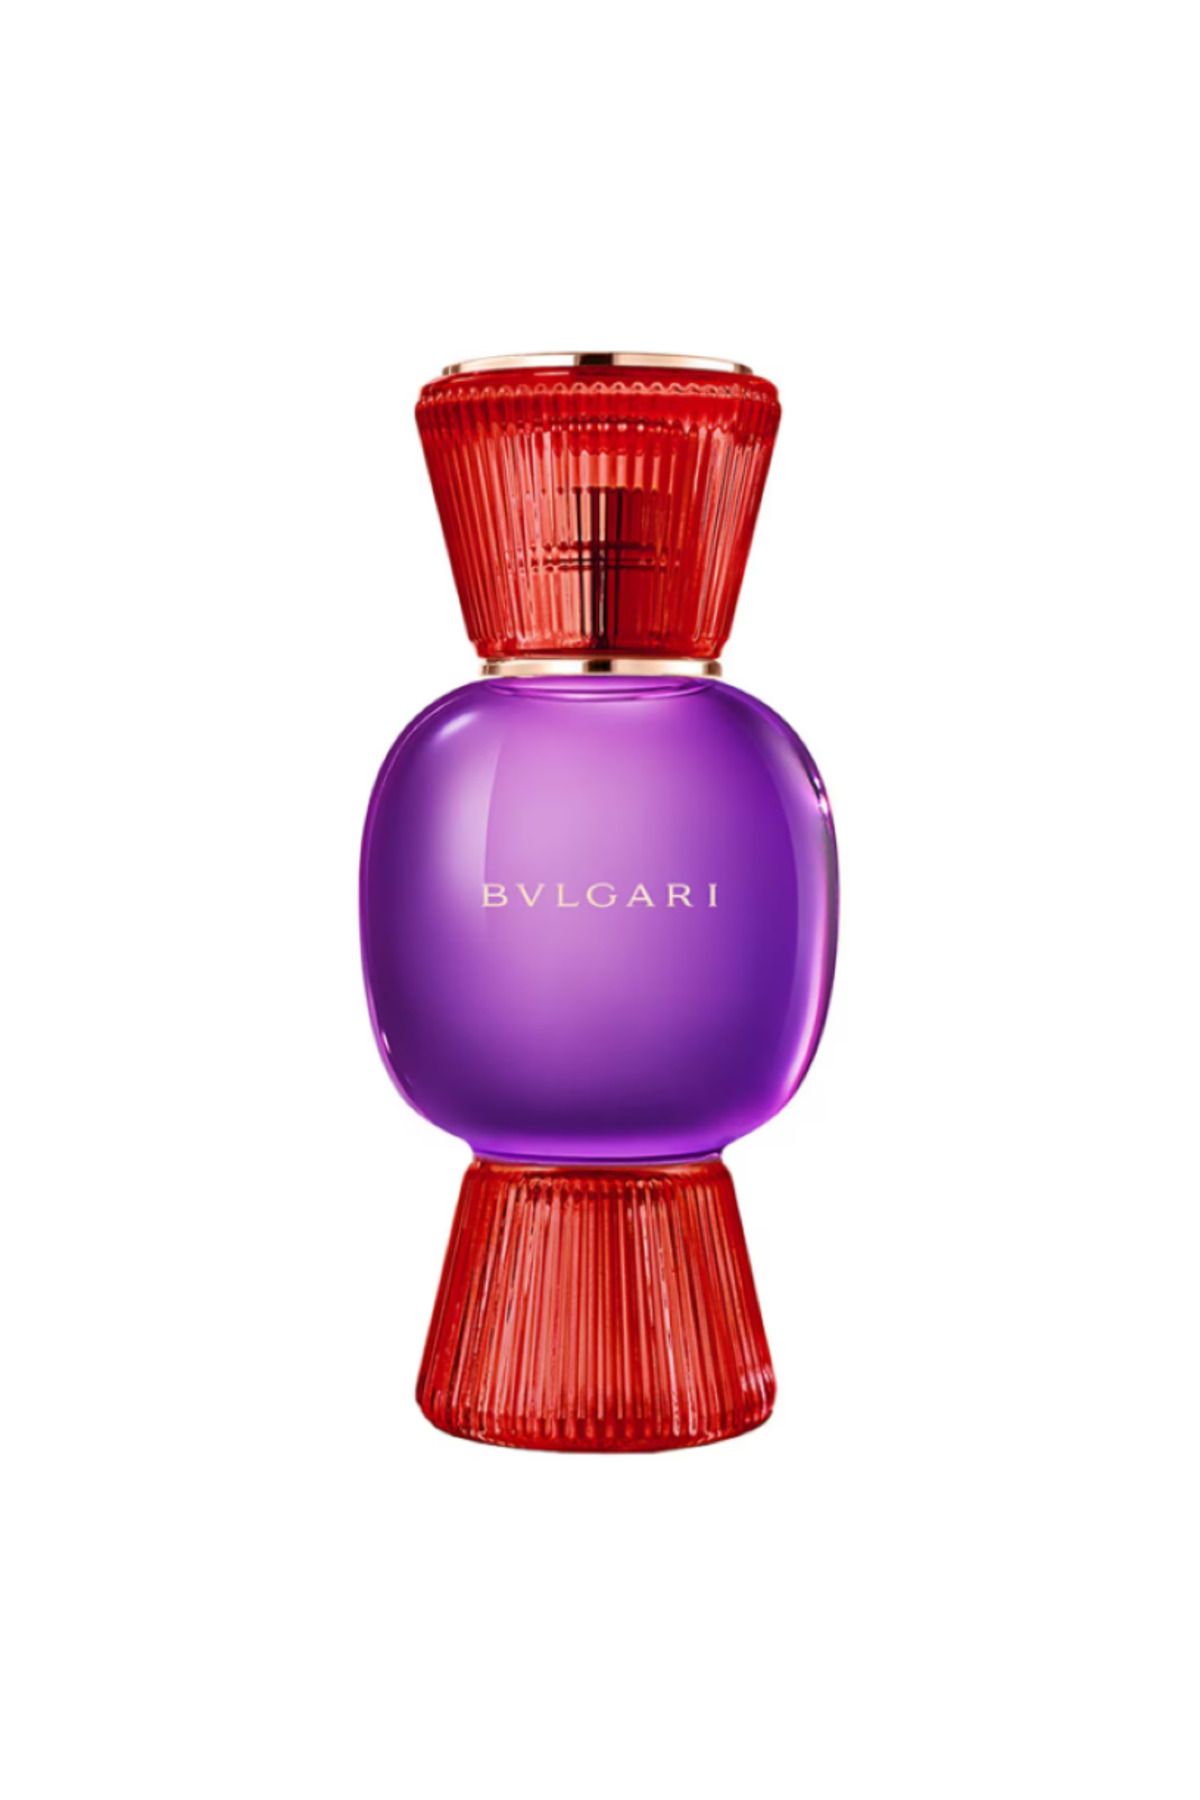 Bvlgari Allegra Fantasia Veneta - Eau de Parfum “Tüm İtalyan sofistikeliği tek bir parfümde. ”50 ML